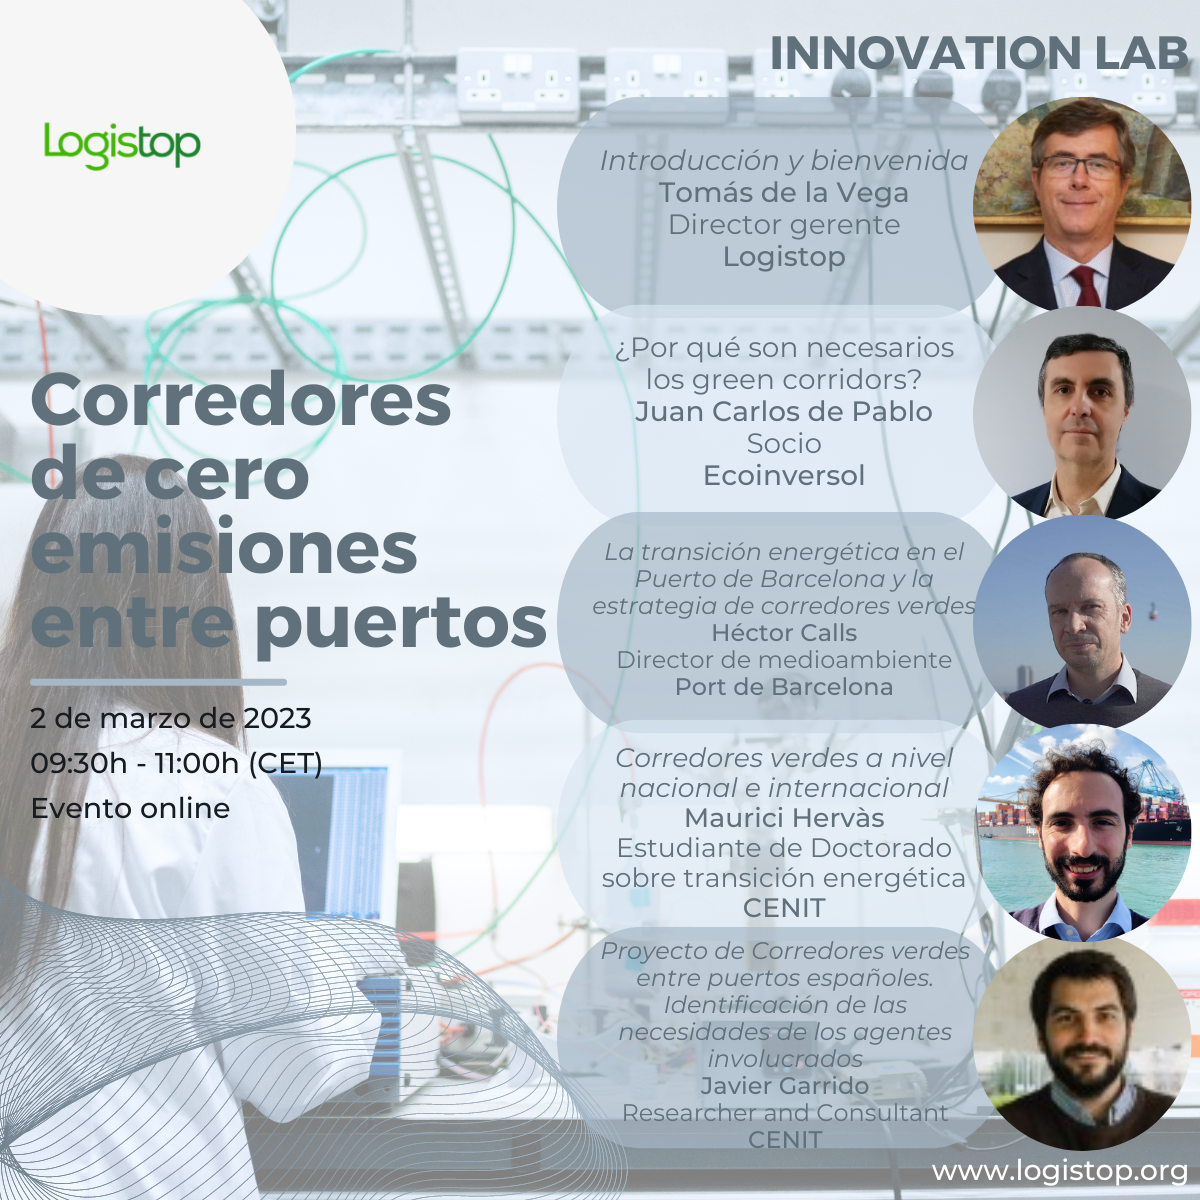 Innovation Lab - Corredores de cero emisiones entre puertos